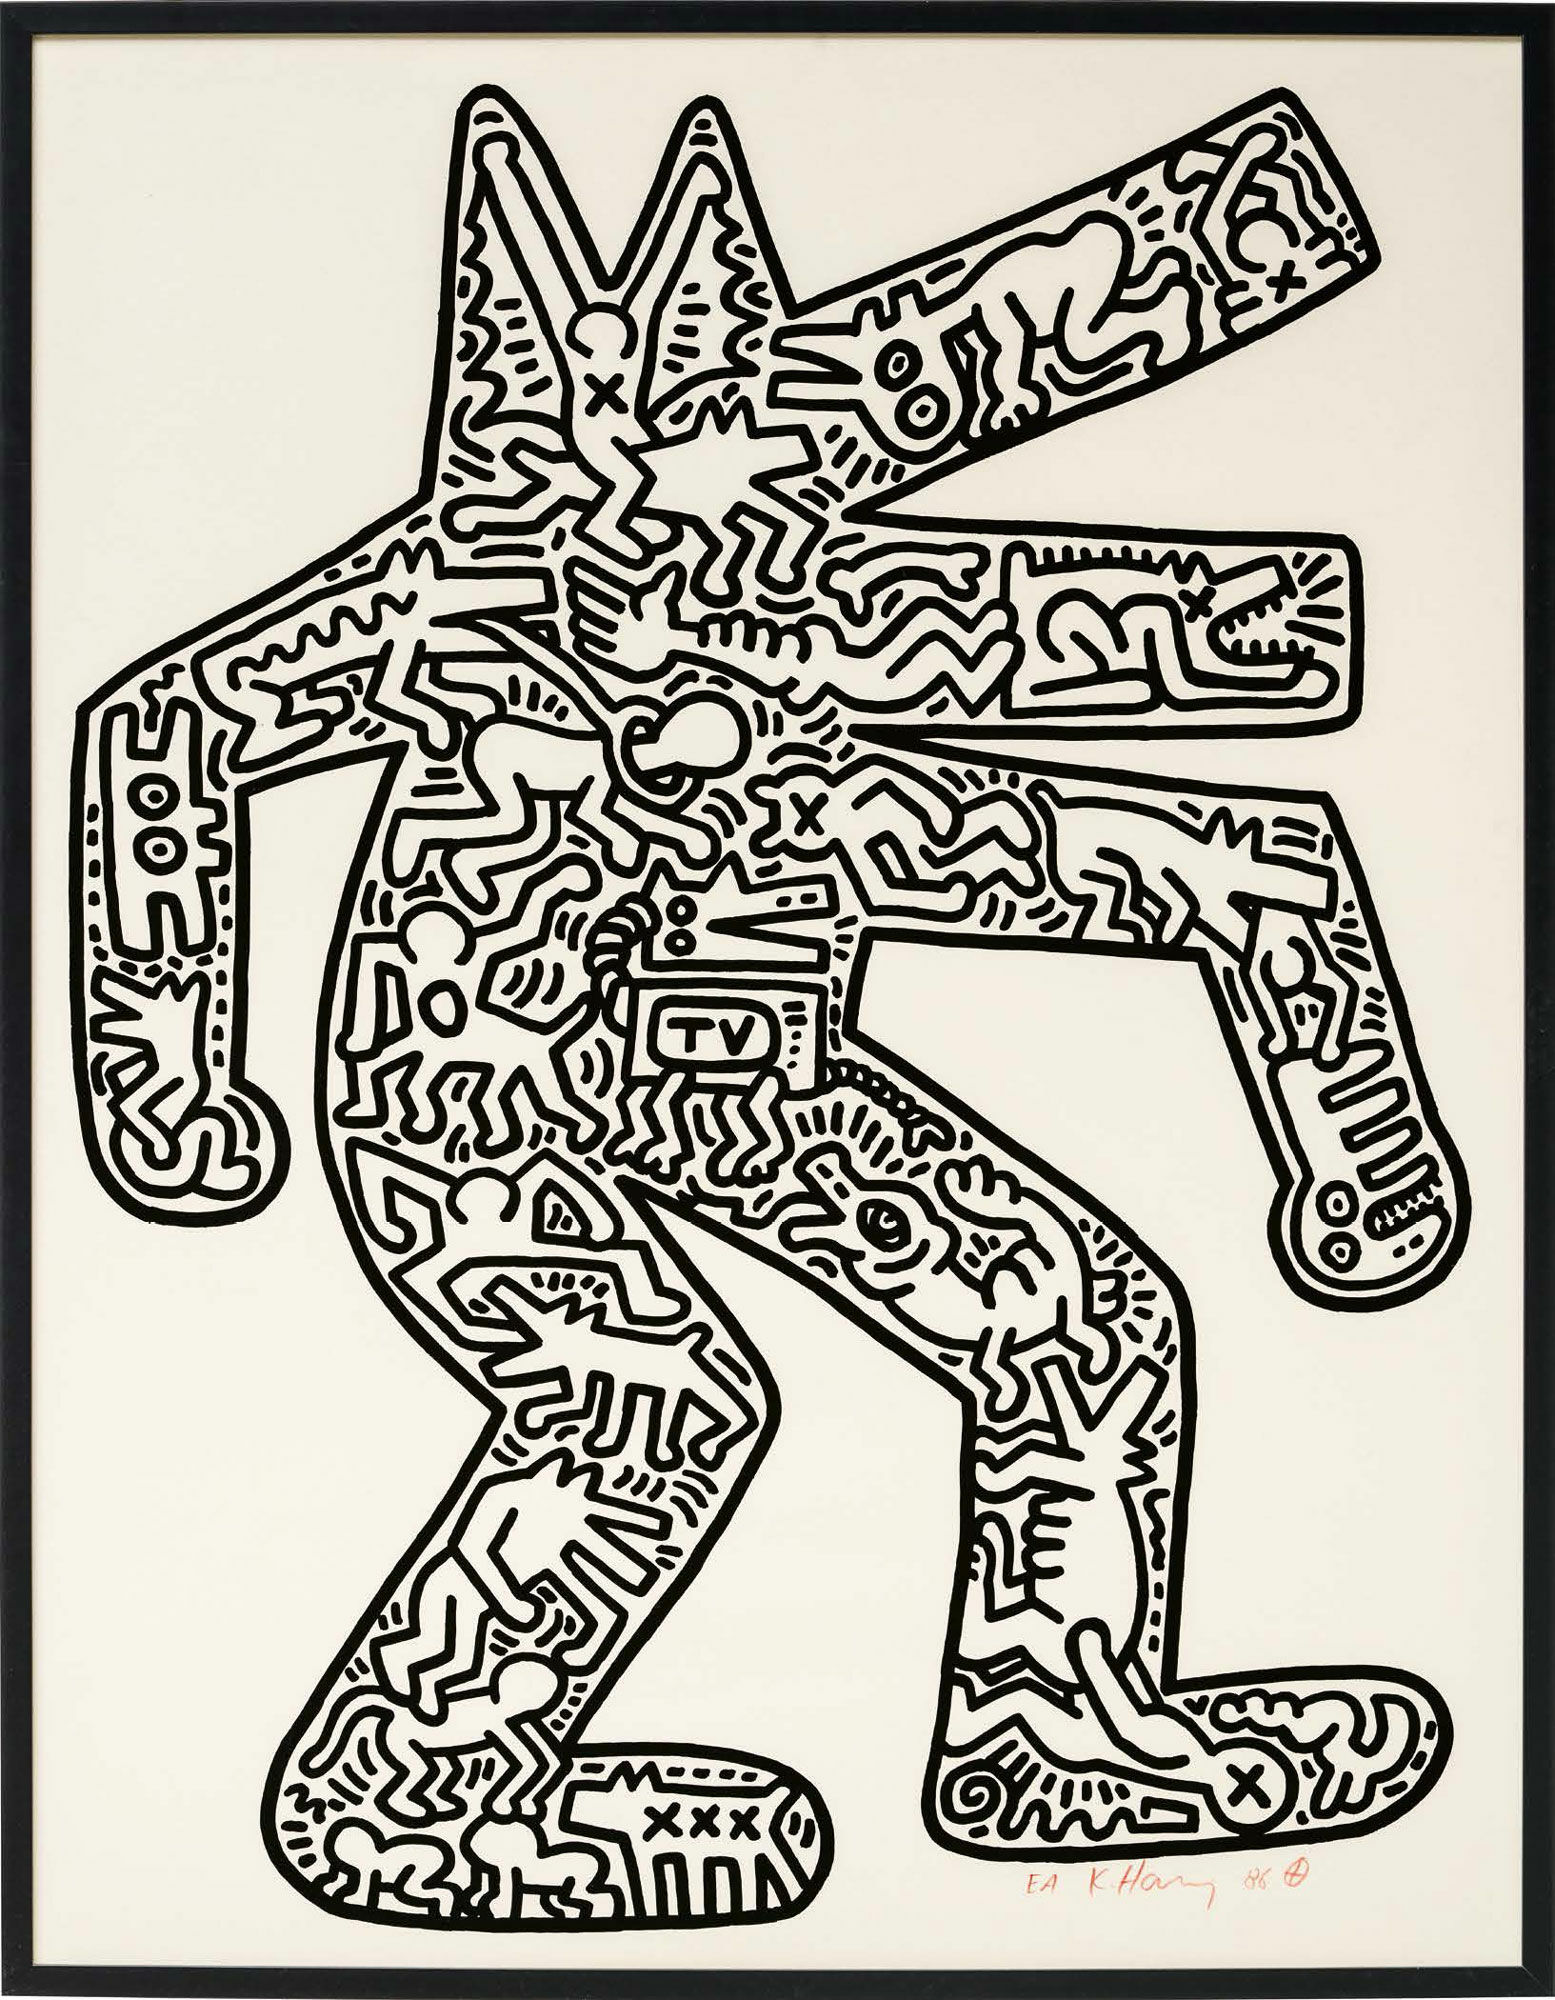 Bild "Dog" (1986) von Keith Haring